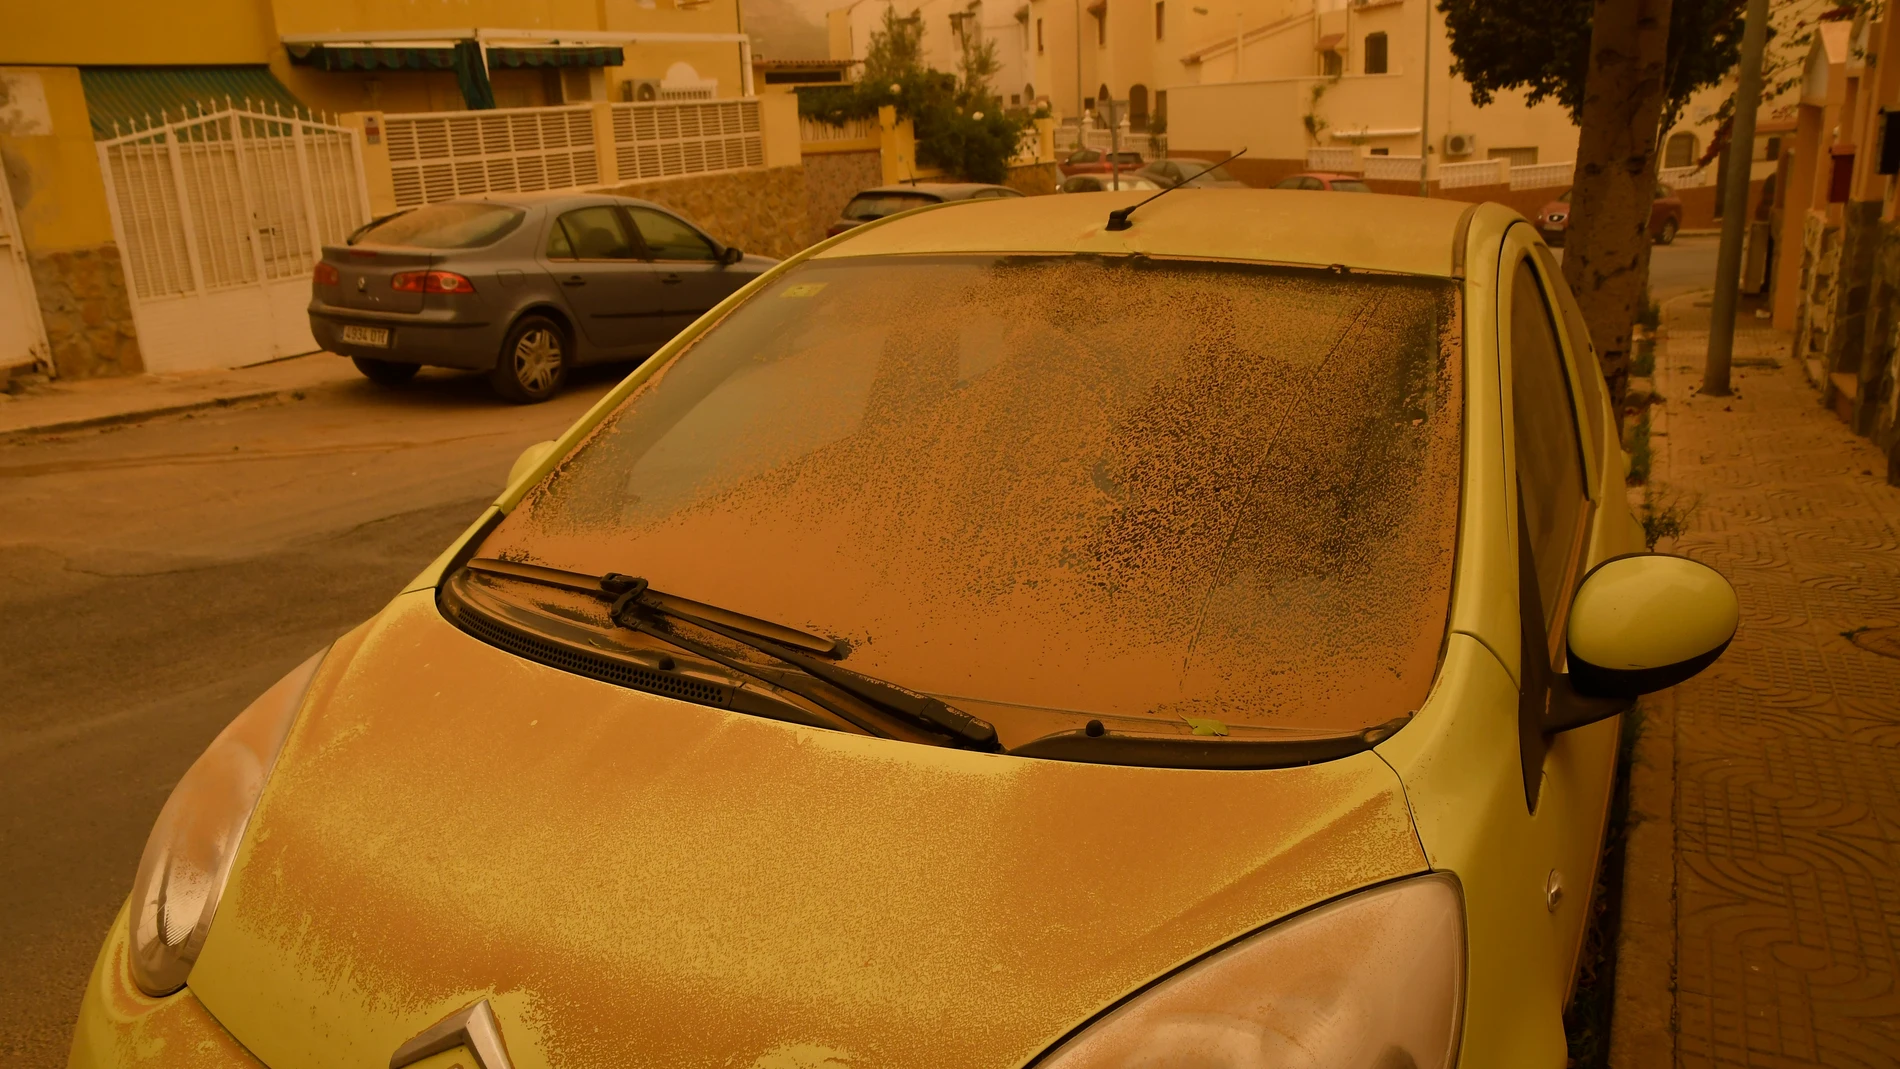 GRAF9295. ROQUETAS DE MAR (ALMERÍA), 15/03/2022.- Un vehículo cubierto de polvo en Aguadulce, Roquetas de Mar (Almería) que ha amanecido este martes bajo los efectos de la intensa calima que ha cubierto de polvo sahariano buena parte de España. EFE/Carlos Barba